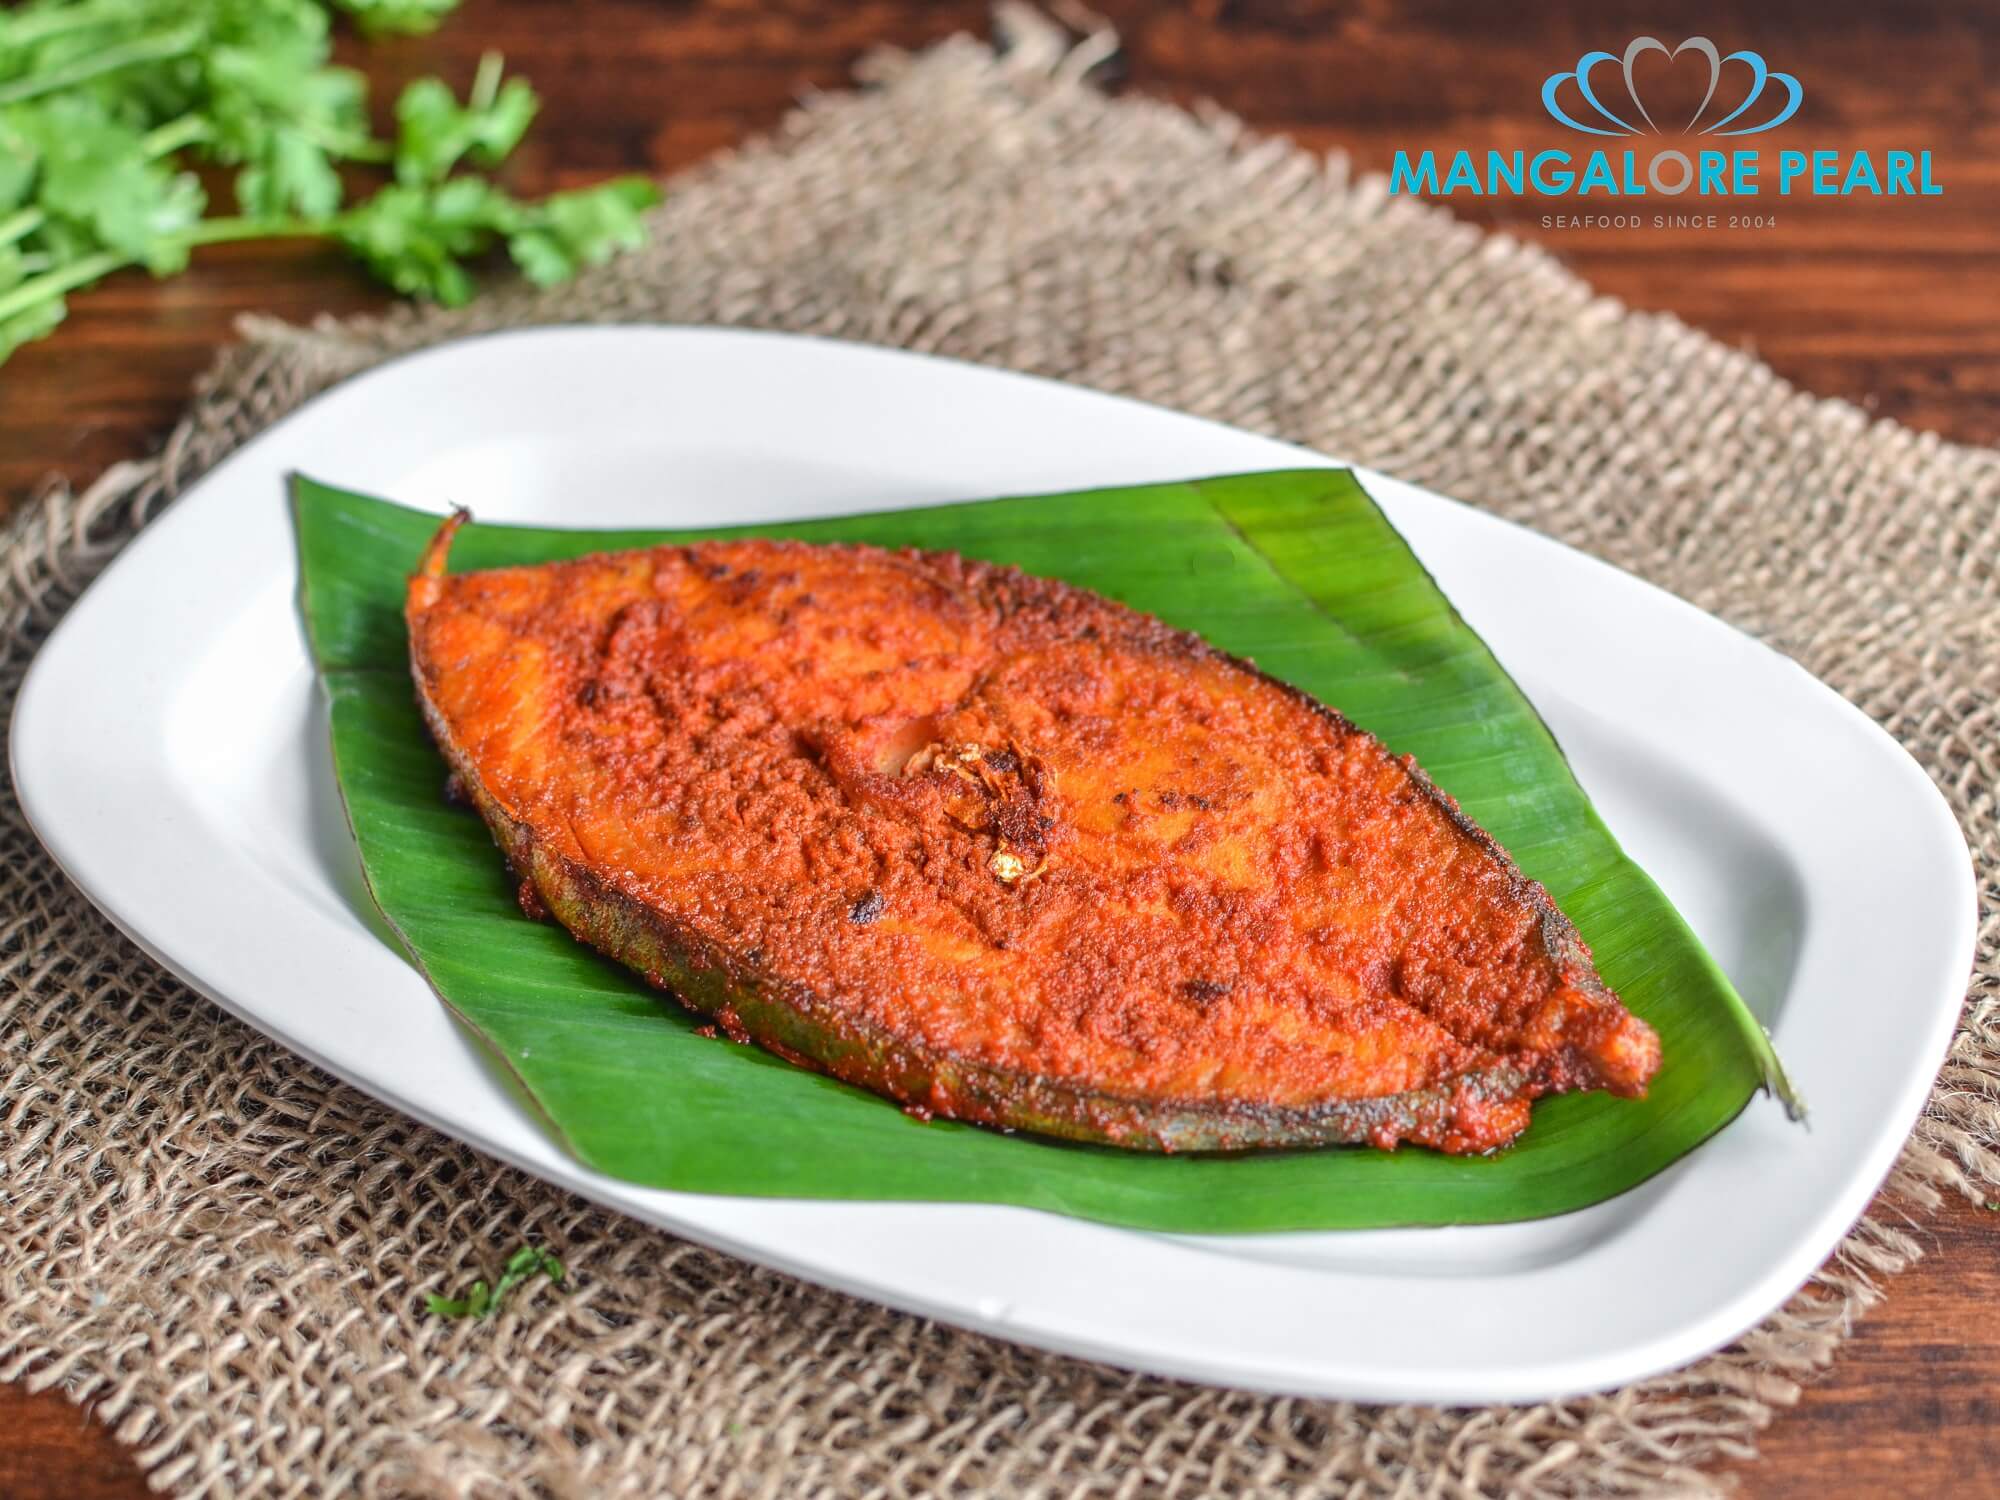 Seer Tawa Fry - Mangalorean seafood